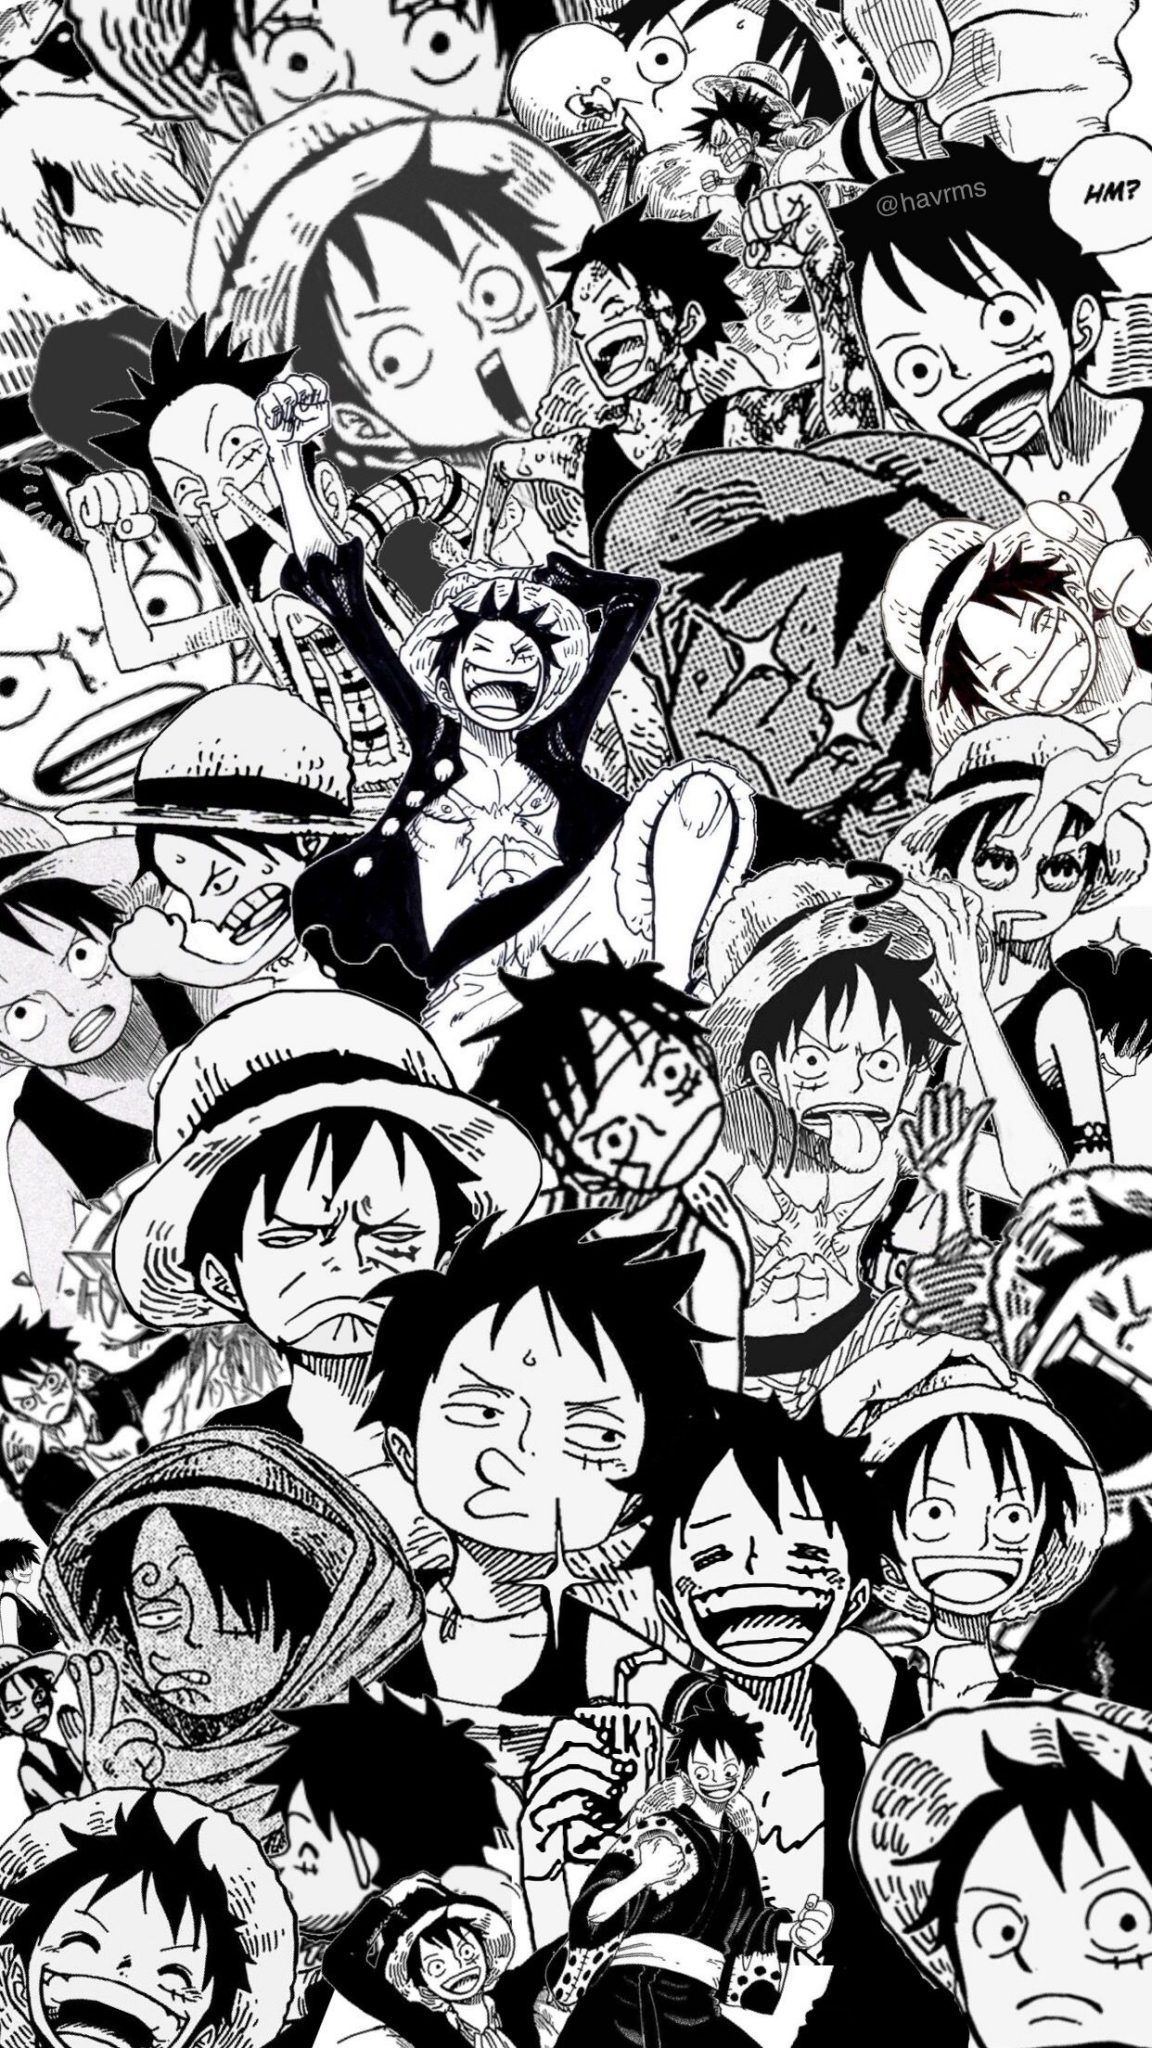 Hình nền iPhone One Piece đen trắng là một sự kết hợp hoàn hảo giữa sự đơn giản và tinh tế. Với những hình ảnh được chọn lọc từ bộ manga One Piece nổi tiếng, bạn sẽ có một hình nền độc đáo và thú vị cho chiếc điện thoại của mình. Việc tạo điểm nhấn cho màn hình iPhone của bạn chưa bao giờ dễ dàng đến như vậy.